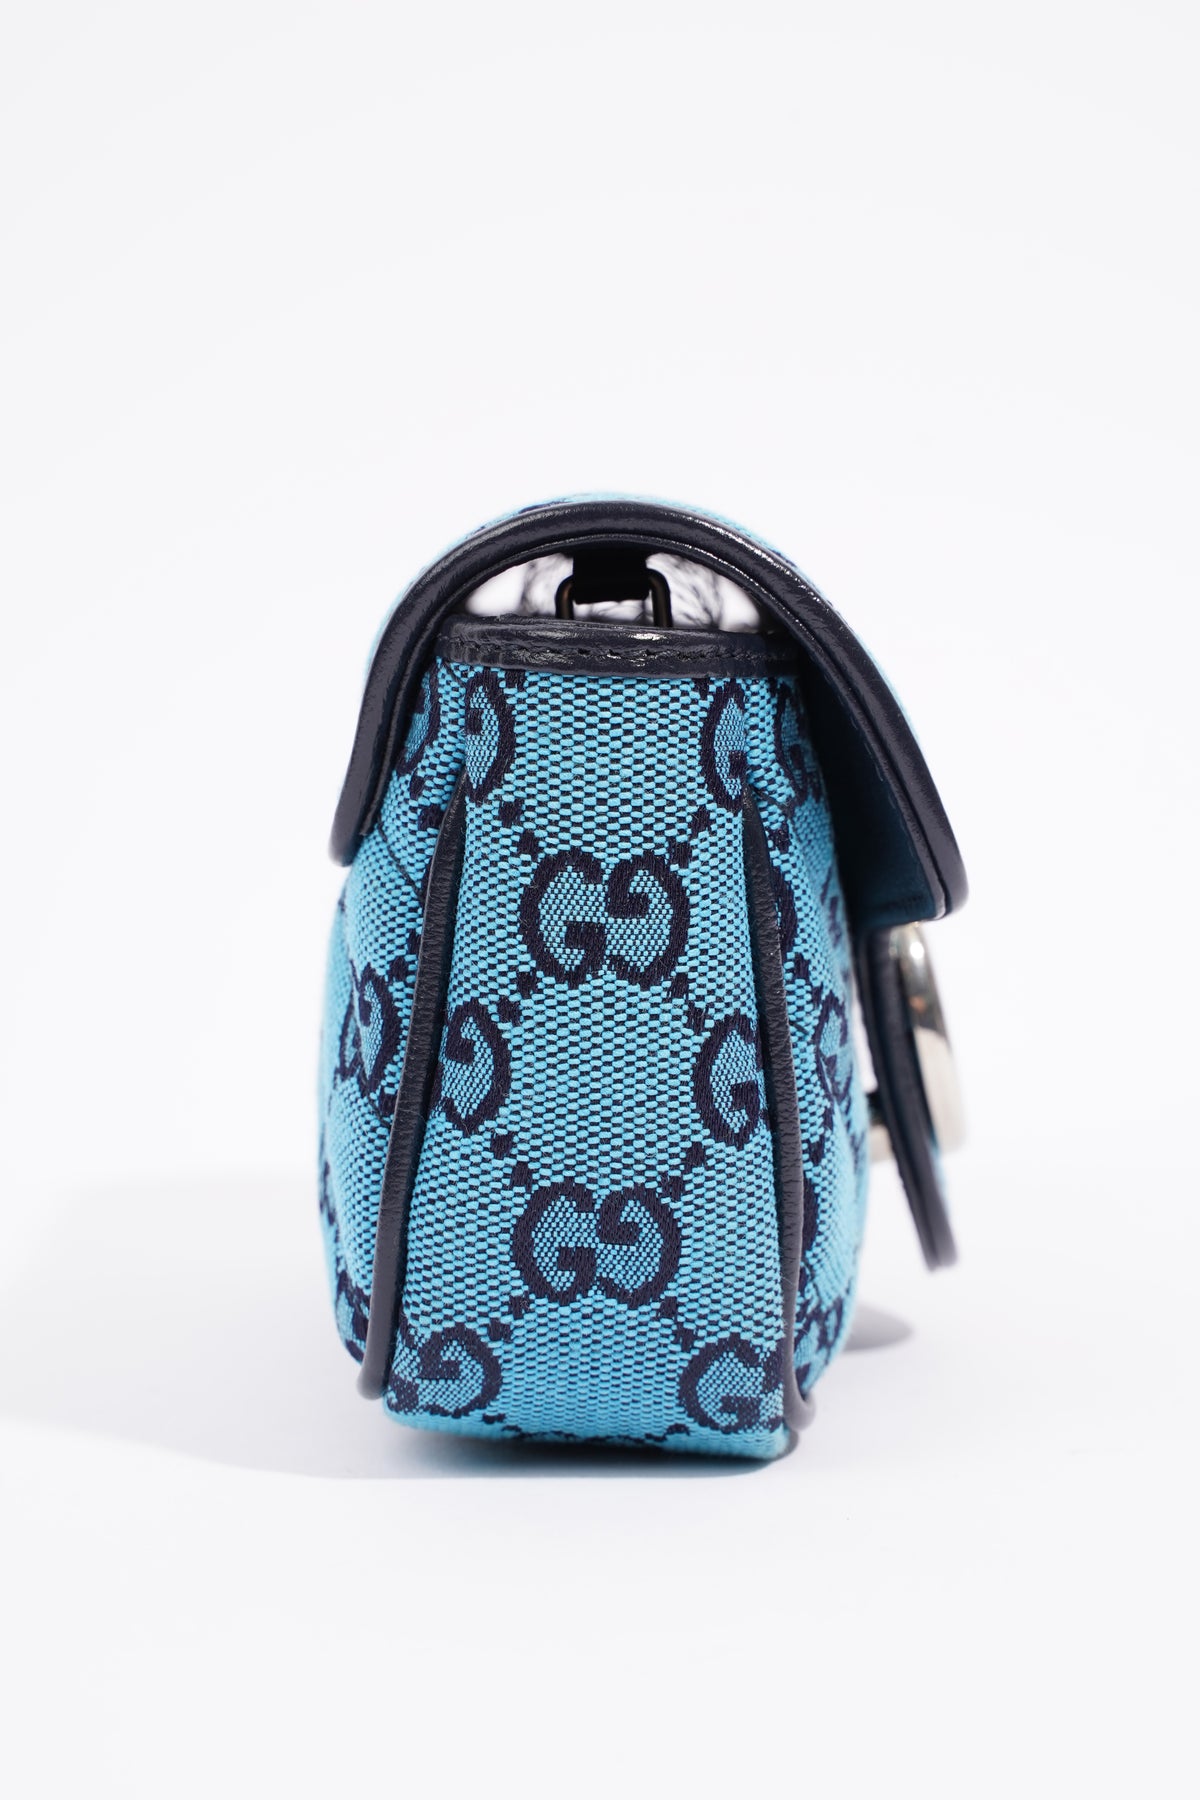 Gucci GG Marmont Multicolour Super Mini Bag in Blue